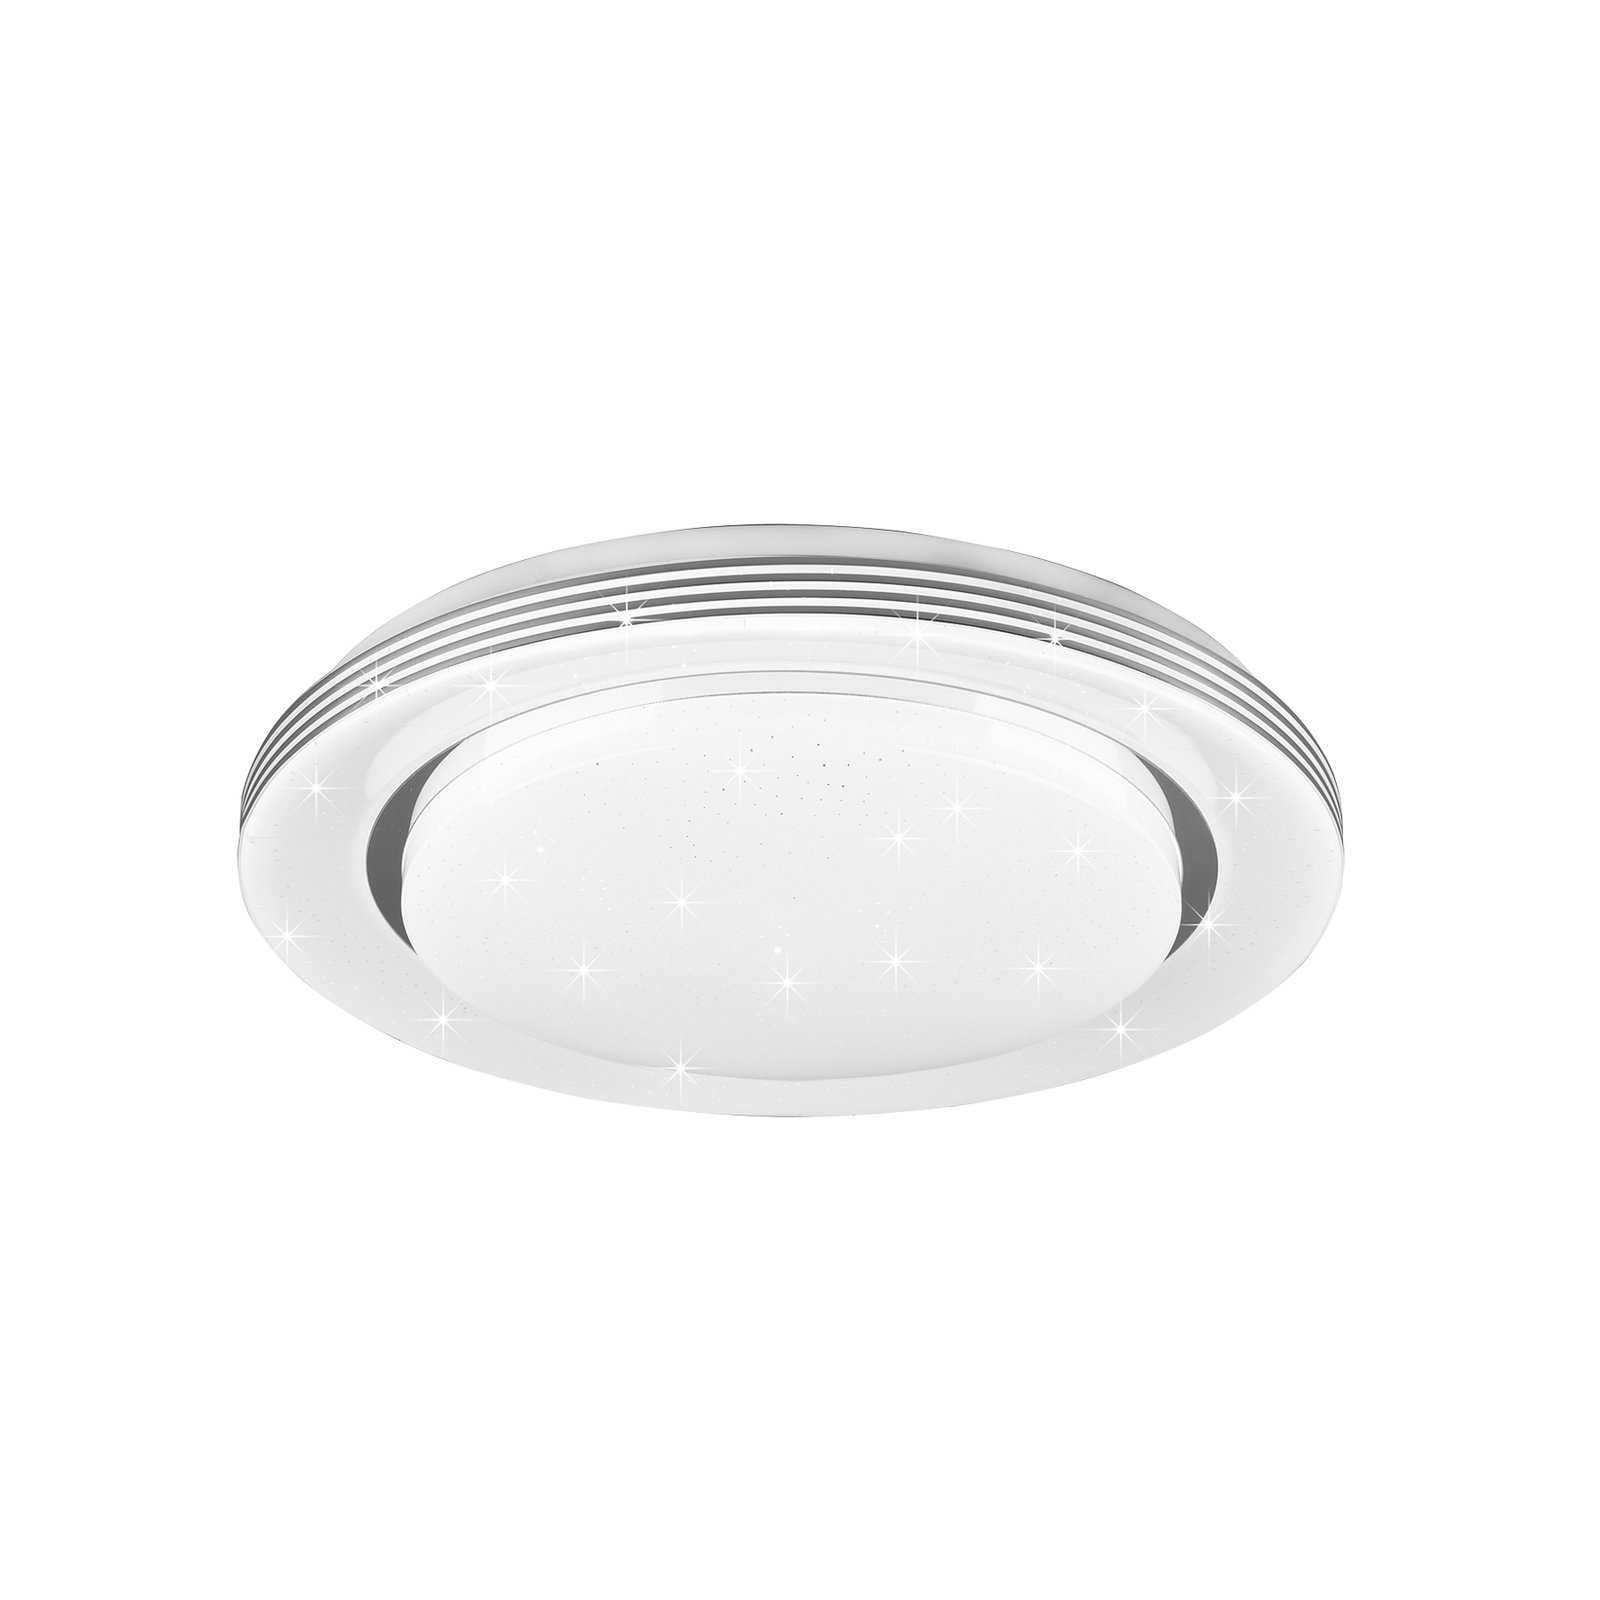 LED-taklampa Atria, Ø 38 cm, vit, plast, CCT